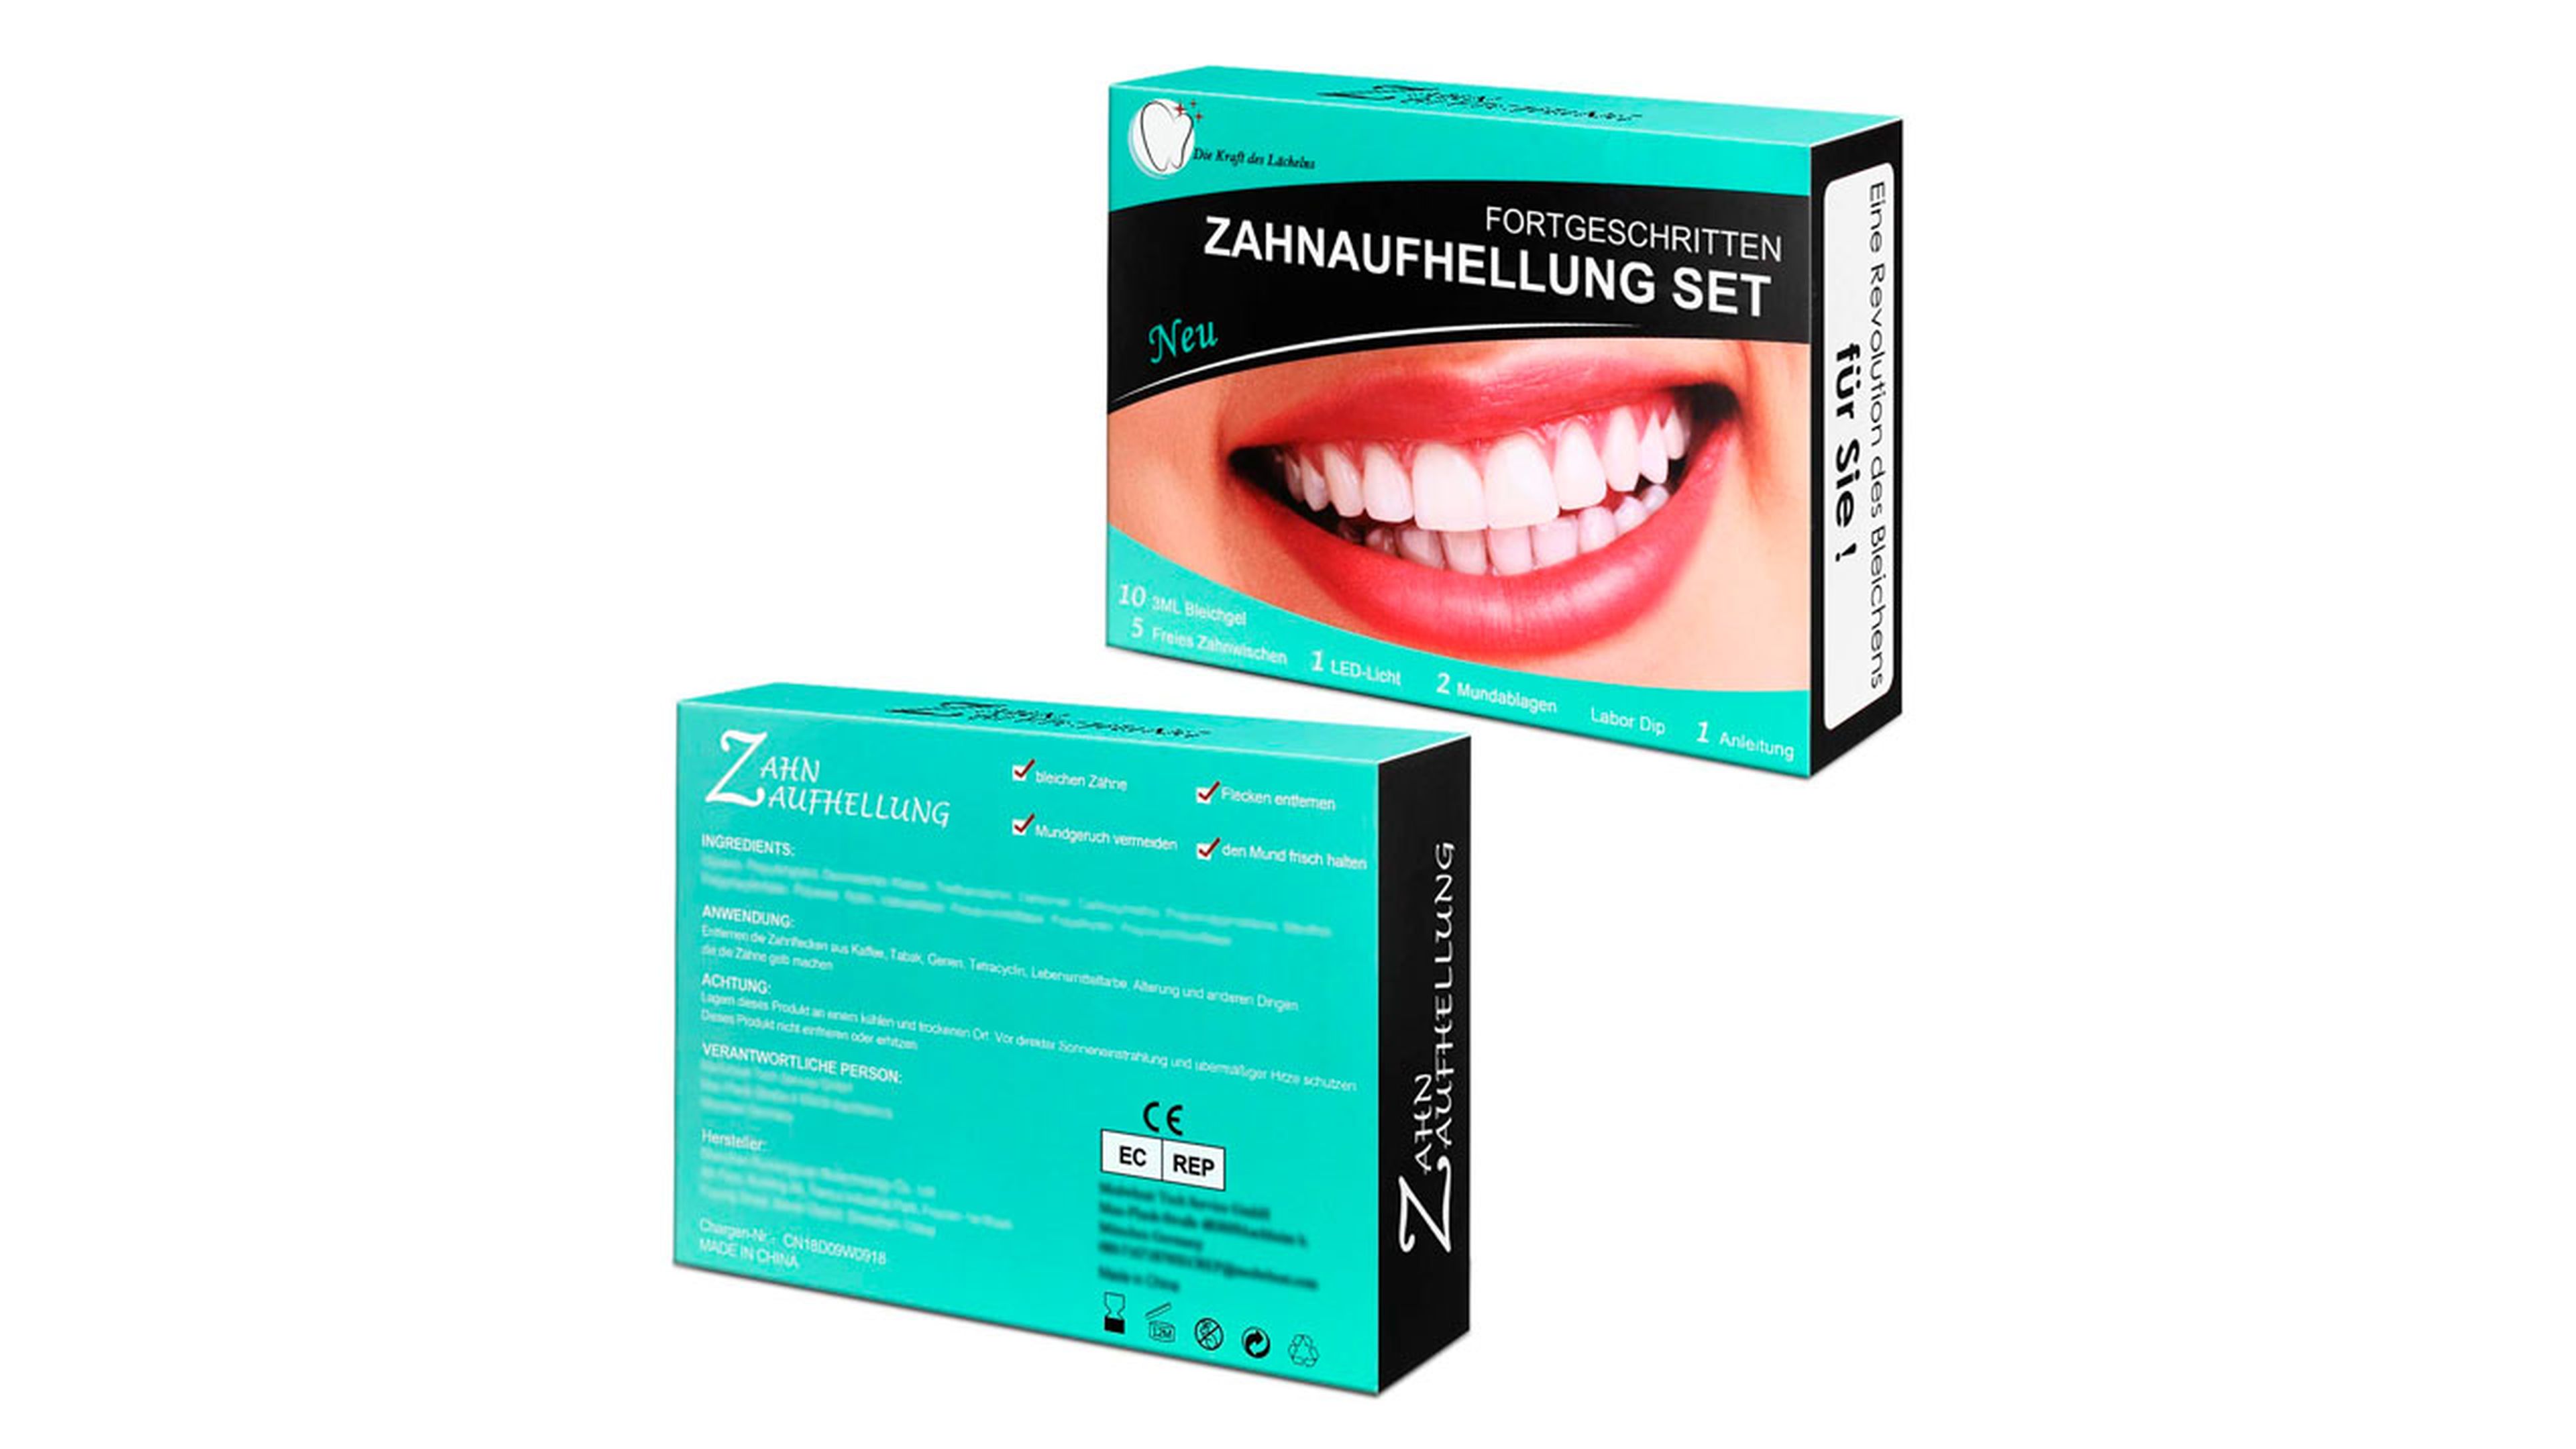 Ofertas Amazon: Kit blanquamiento dental menos 15 euros